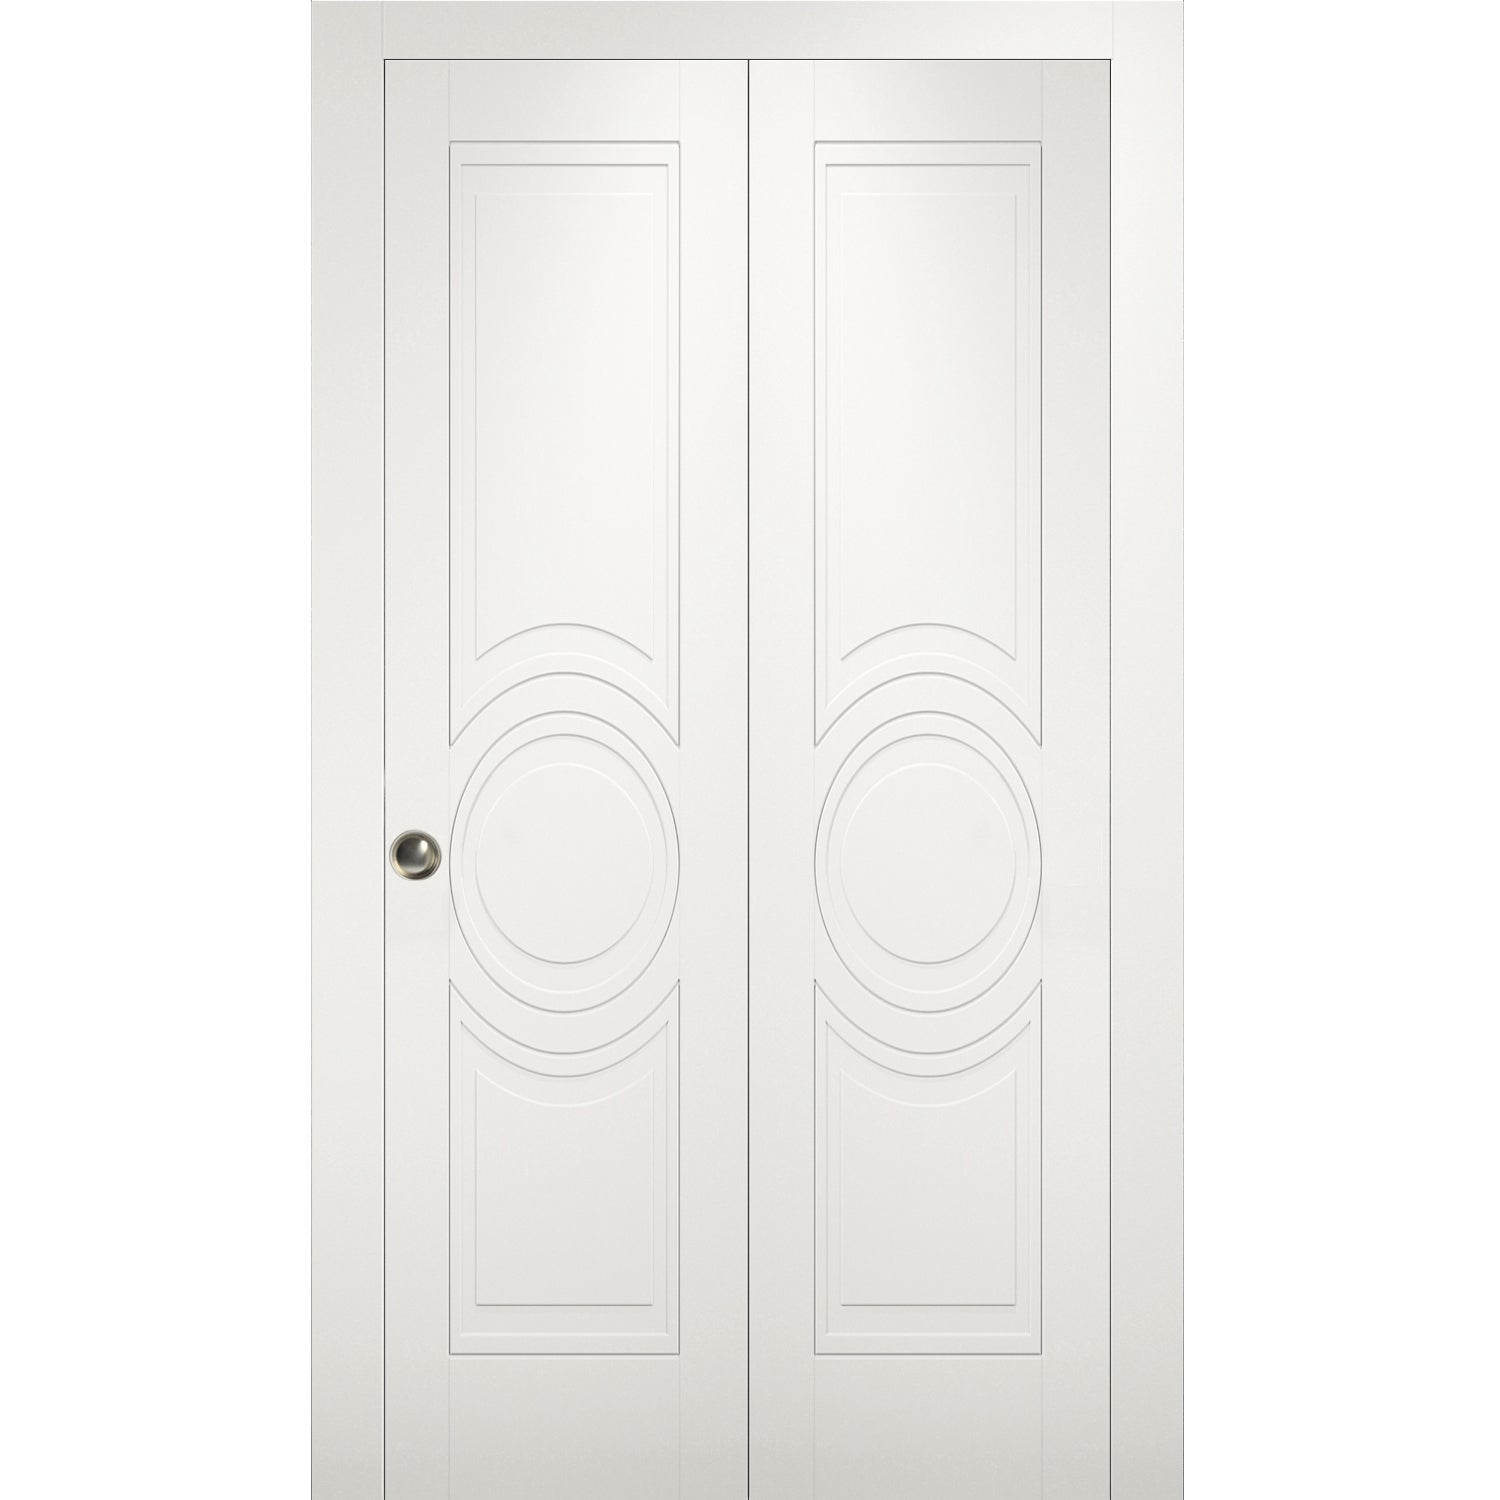 Solid French Door / Mela 7001 Matte White / Single Regular Panel Frame ...